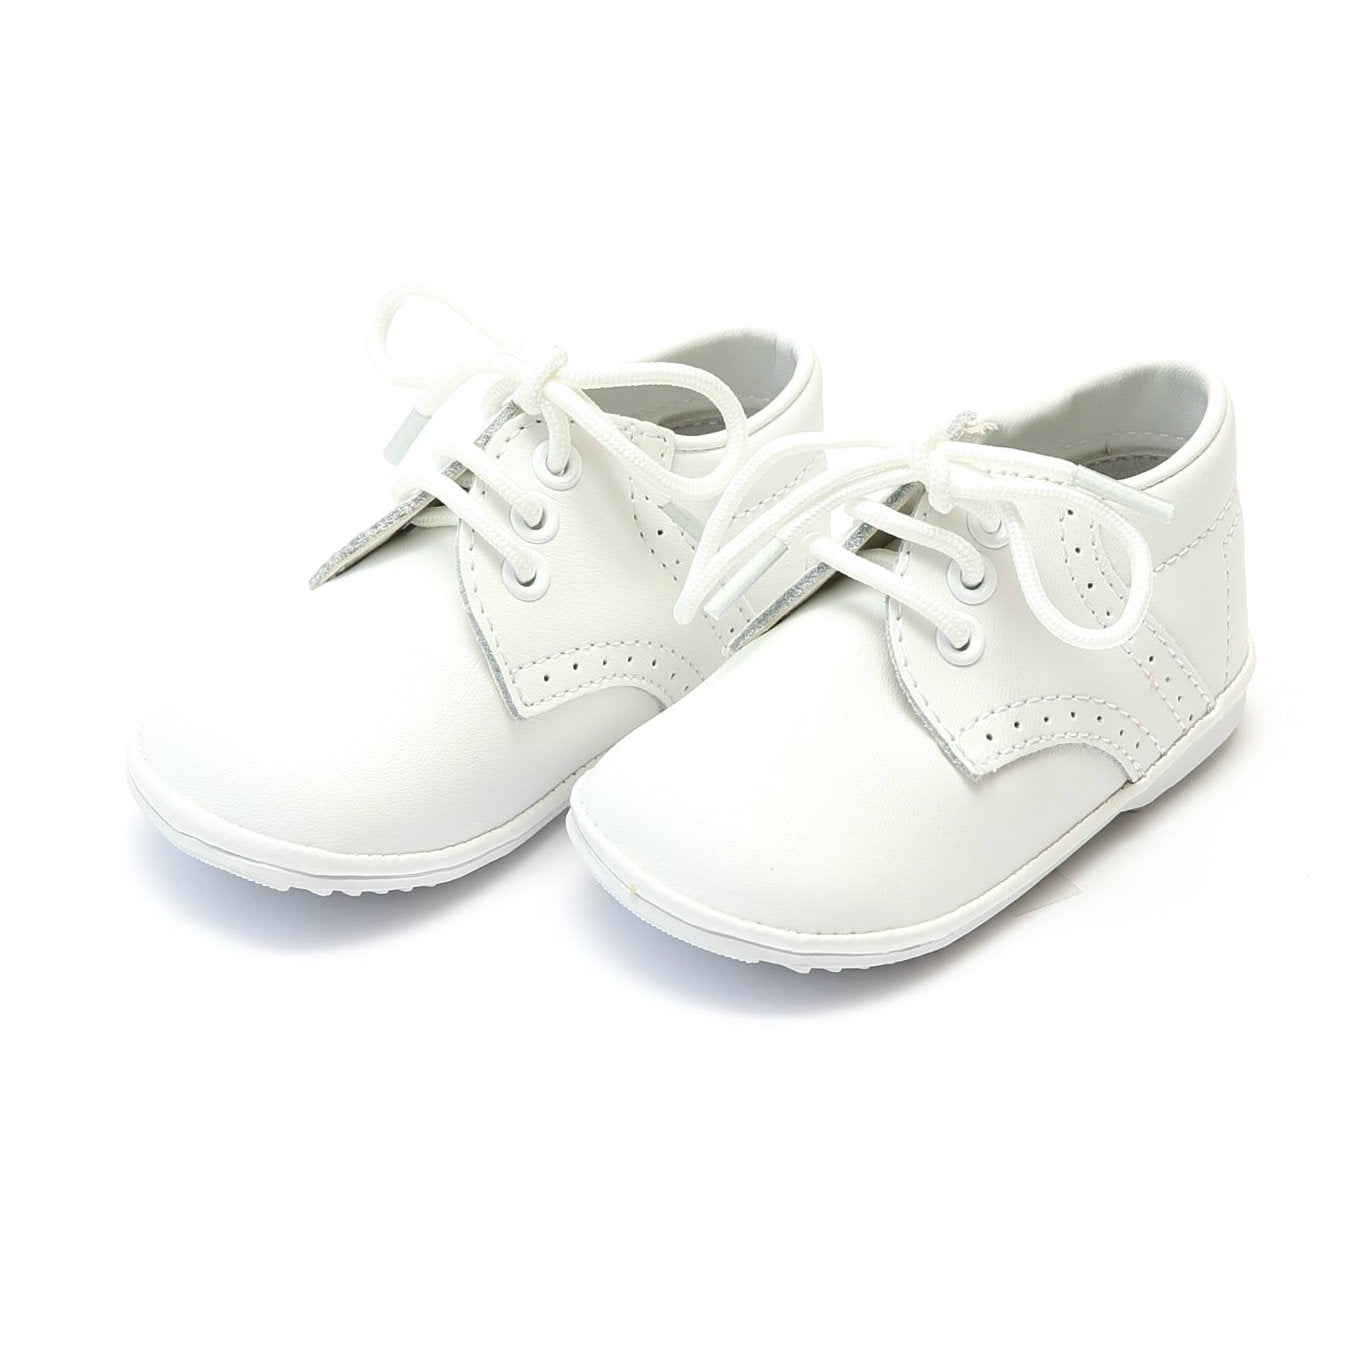 James - White Shoes L'Amour   